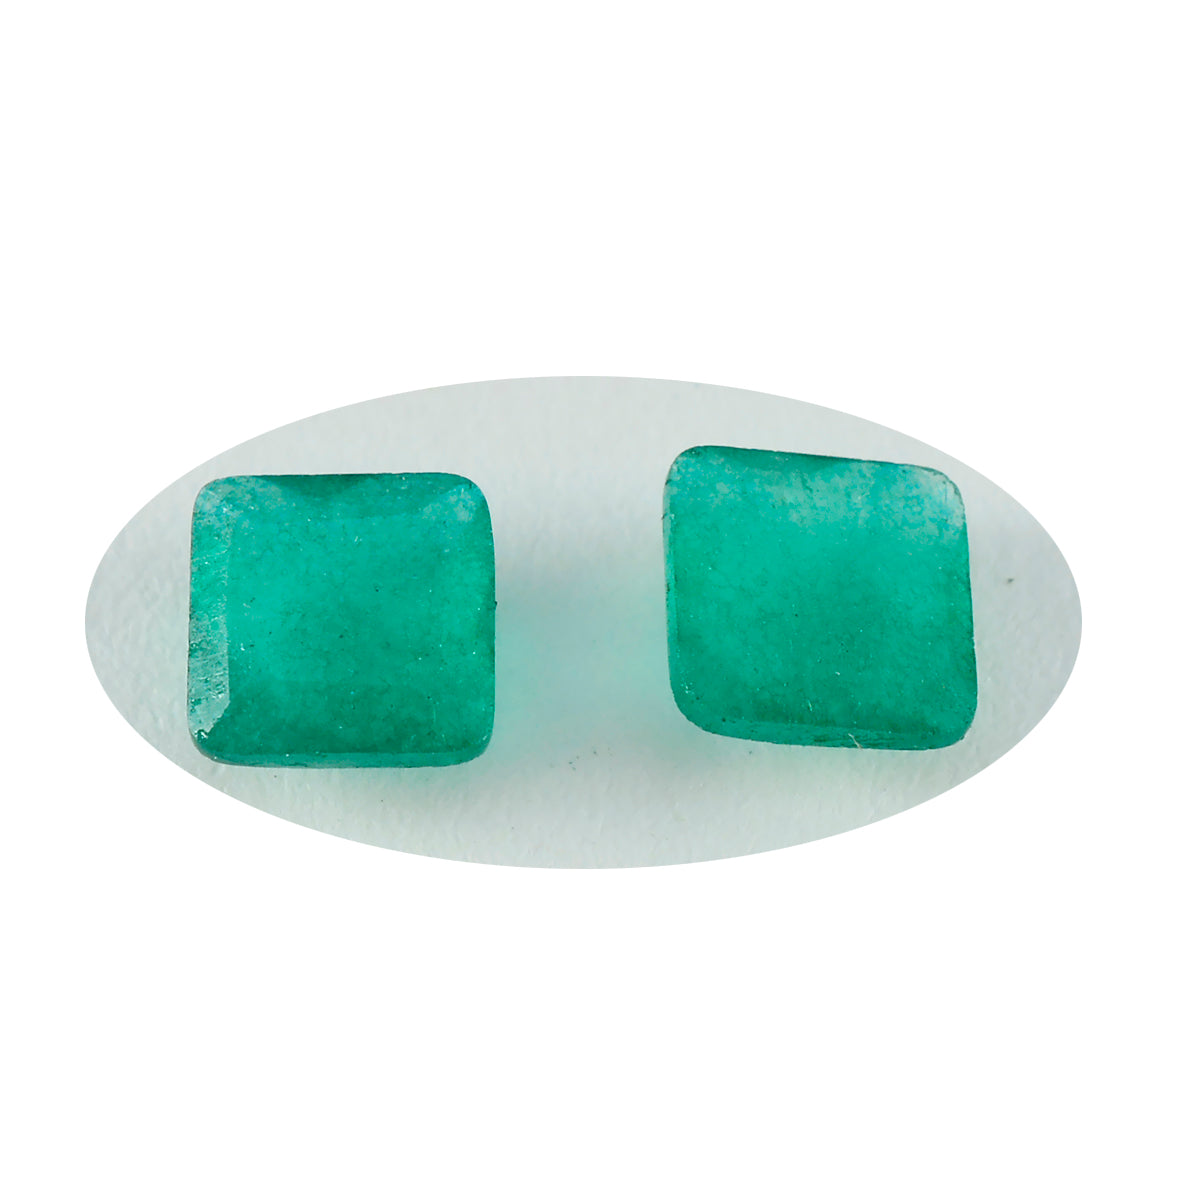 Riyogems 1 Stück echter grüner Jaspis, facettiert, 10 x 10 mm, quadratische Form, erstaunliche Qualität, lose Edelsteine